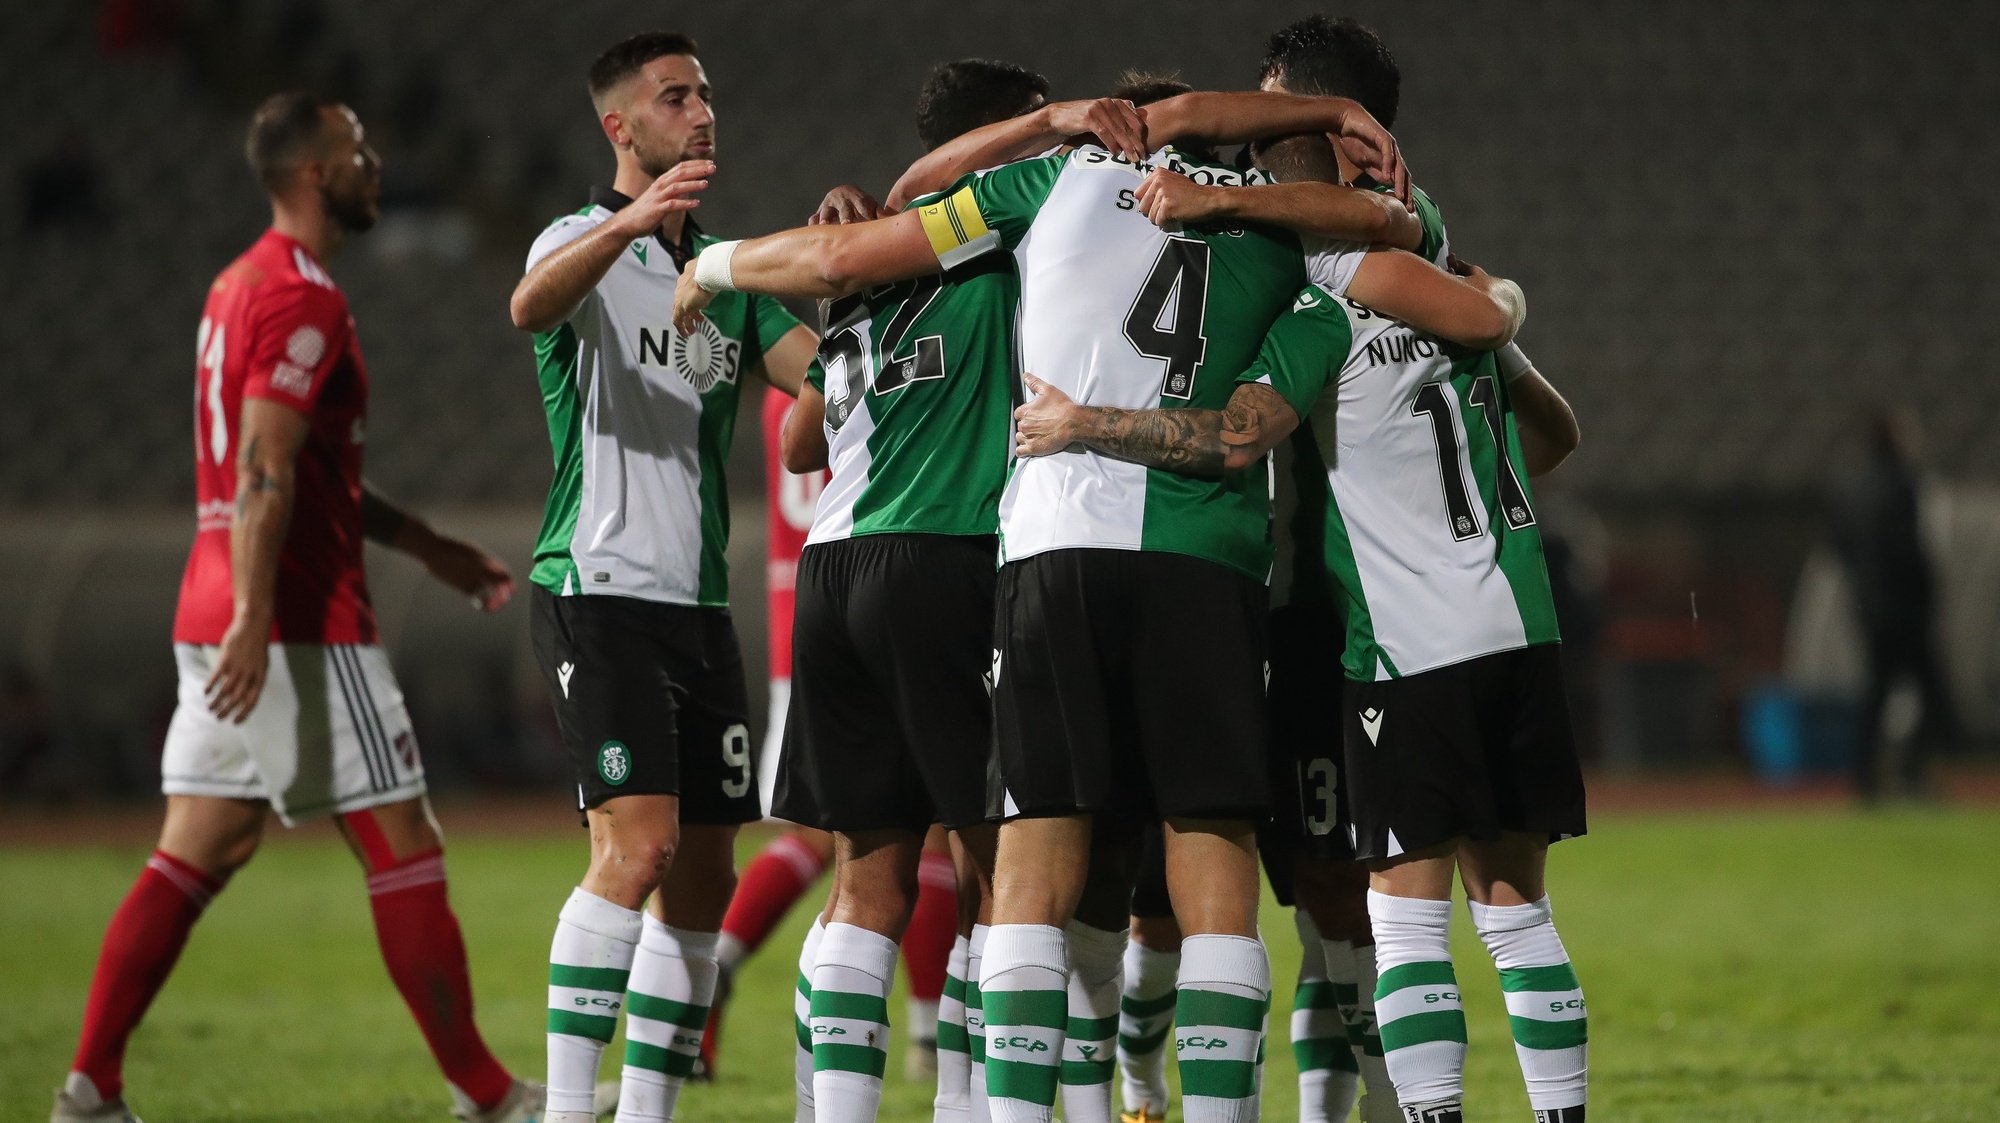 Coates do Sporting celebra após marcar um golo durante o jogo da 3ª eliminatória da Taça de Portugal contra o  Sacavenense, realizado no Estádio do Jamor, em Oeiras, 23 de novembro de 2020. MÁRIO CRUZ/LUSA